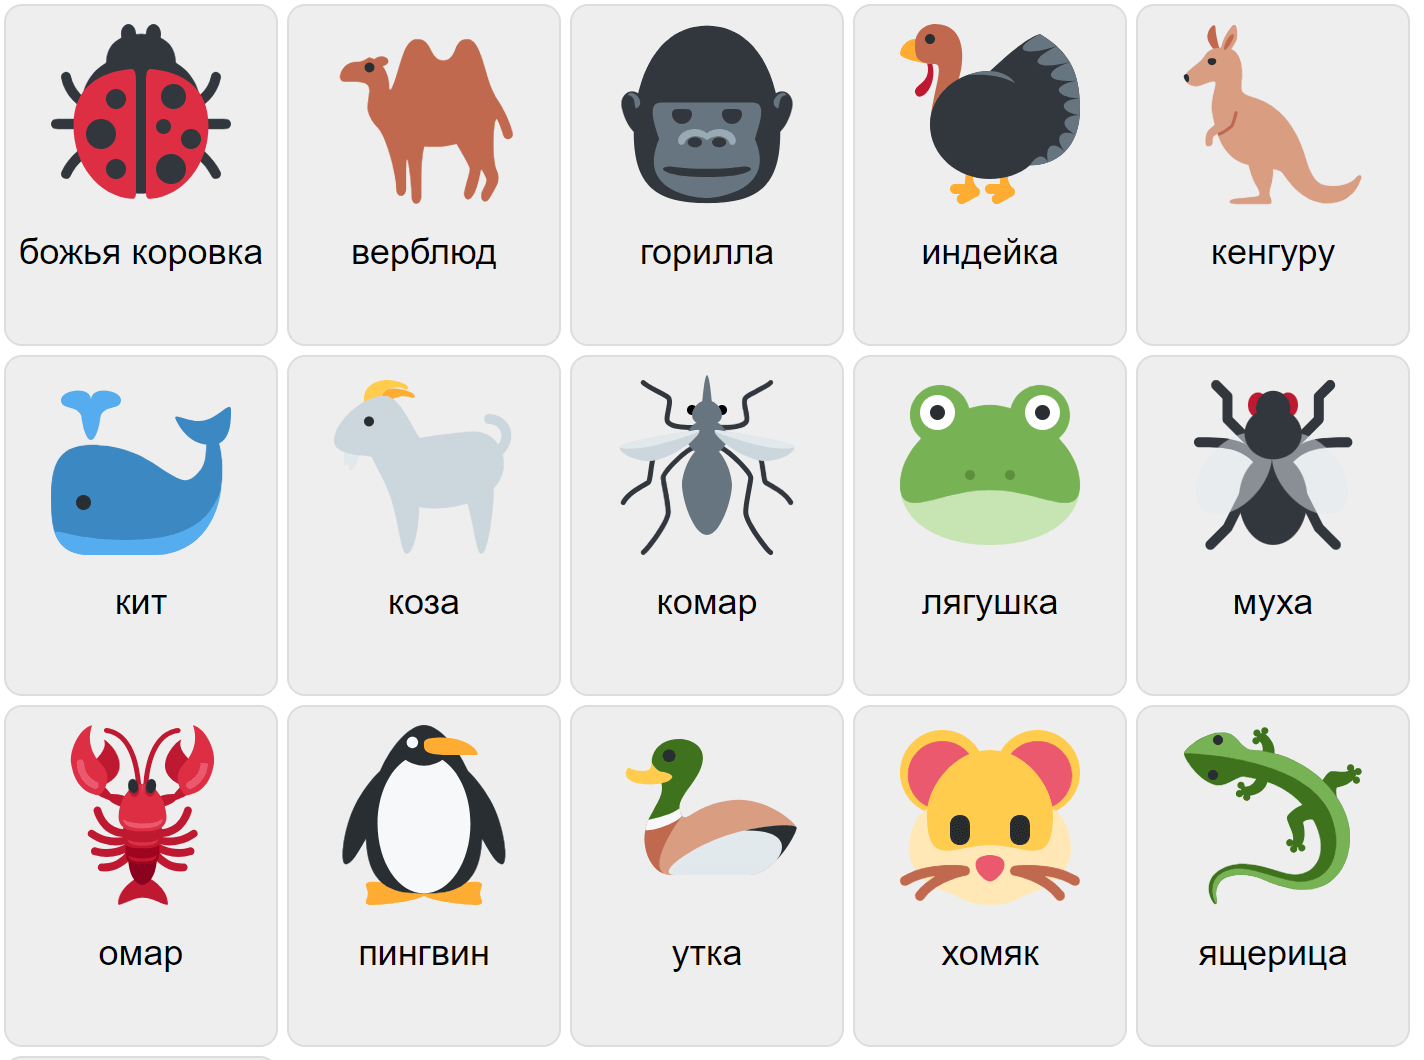 Animales en ruso 2